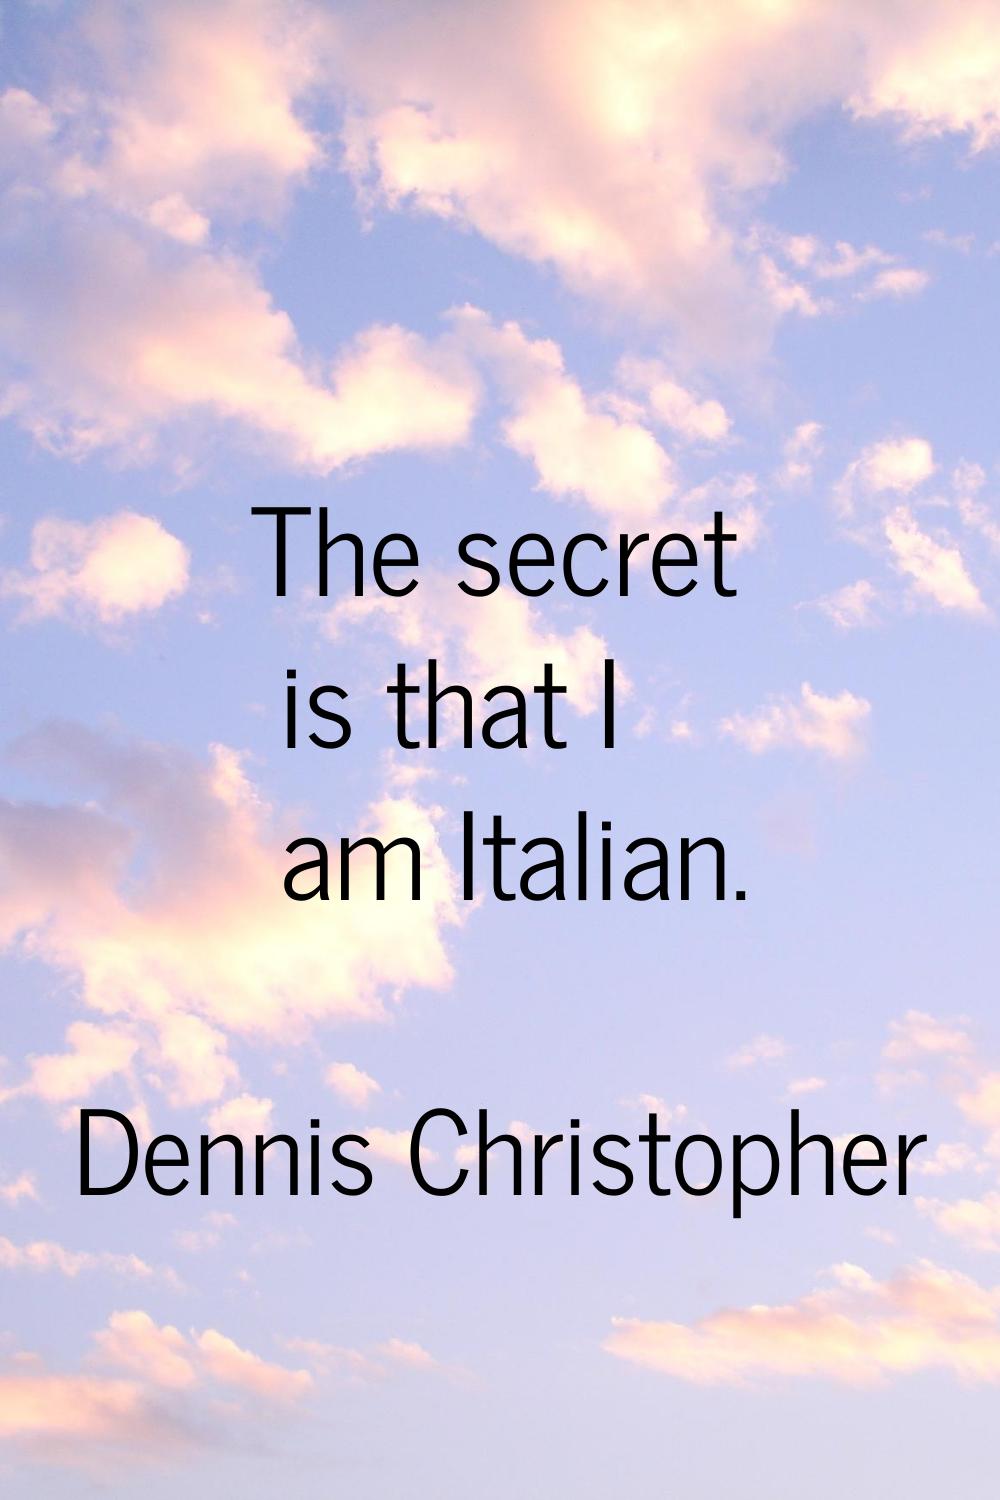 The secret is that I am Italian.